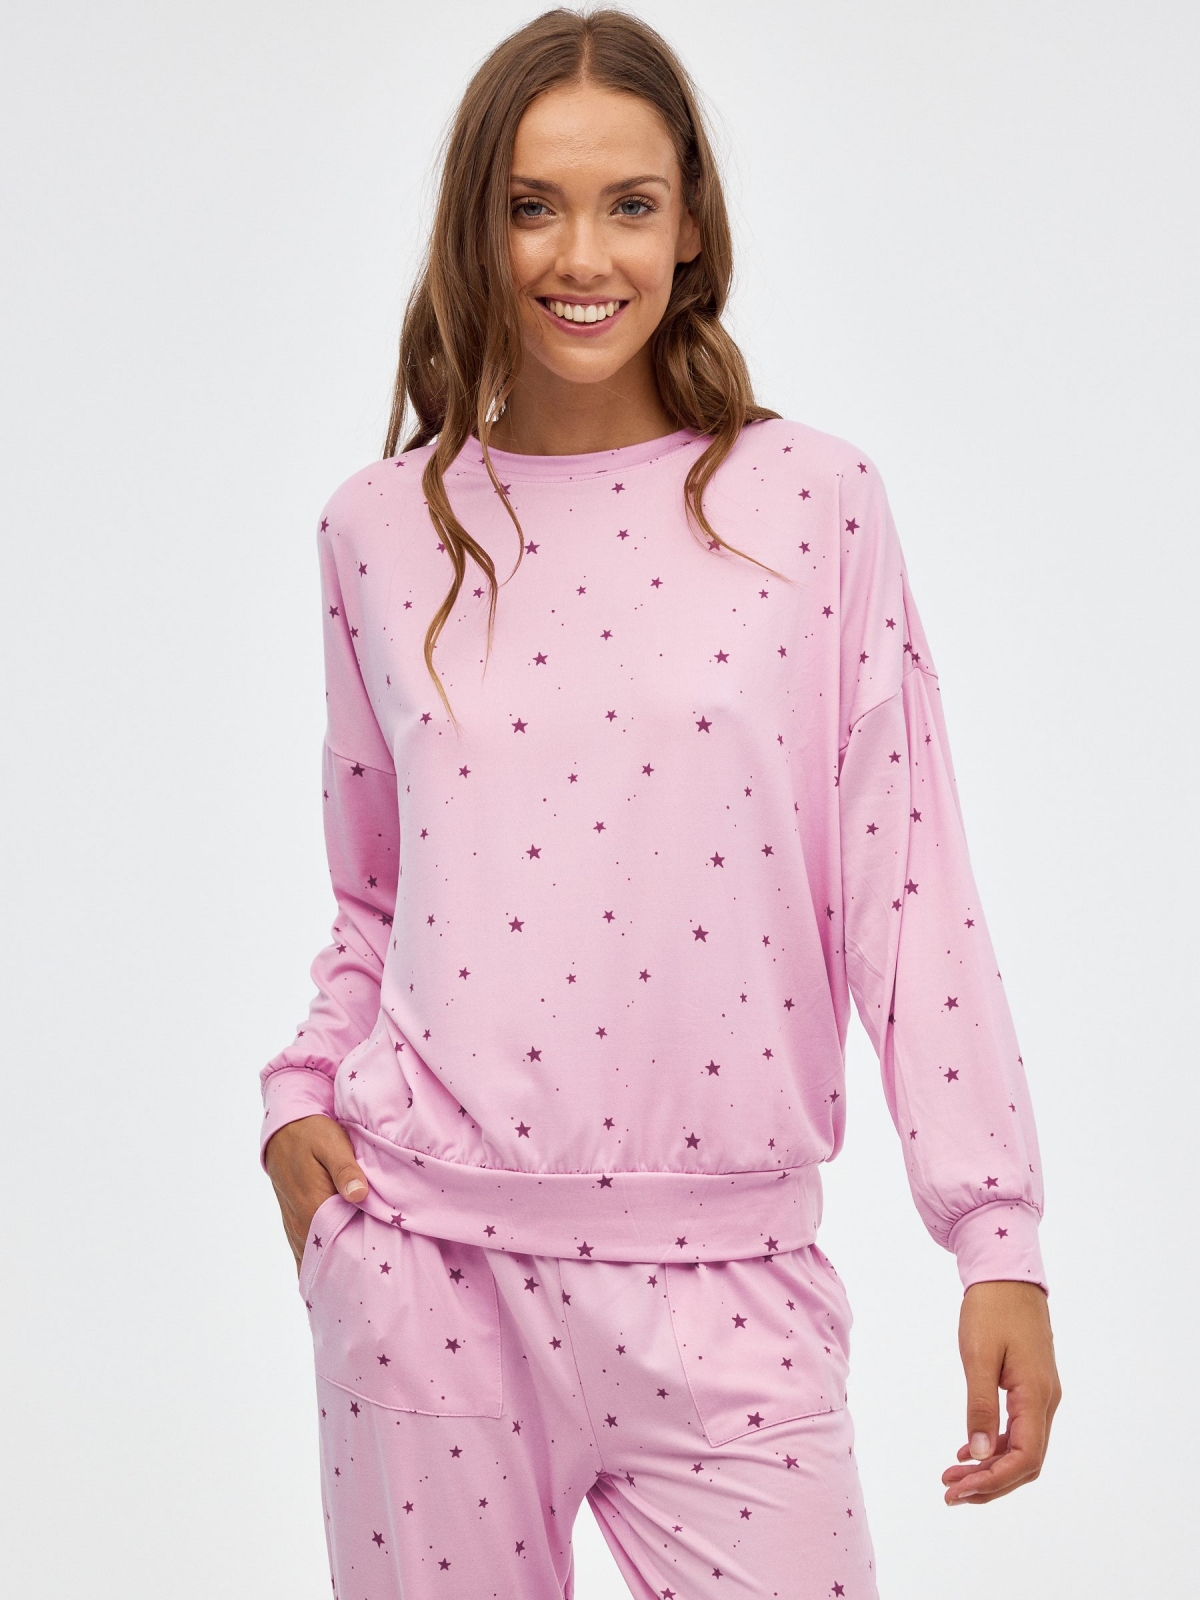 Pijama terciopelo estrellas malva vista media frontal